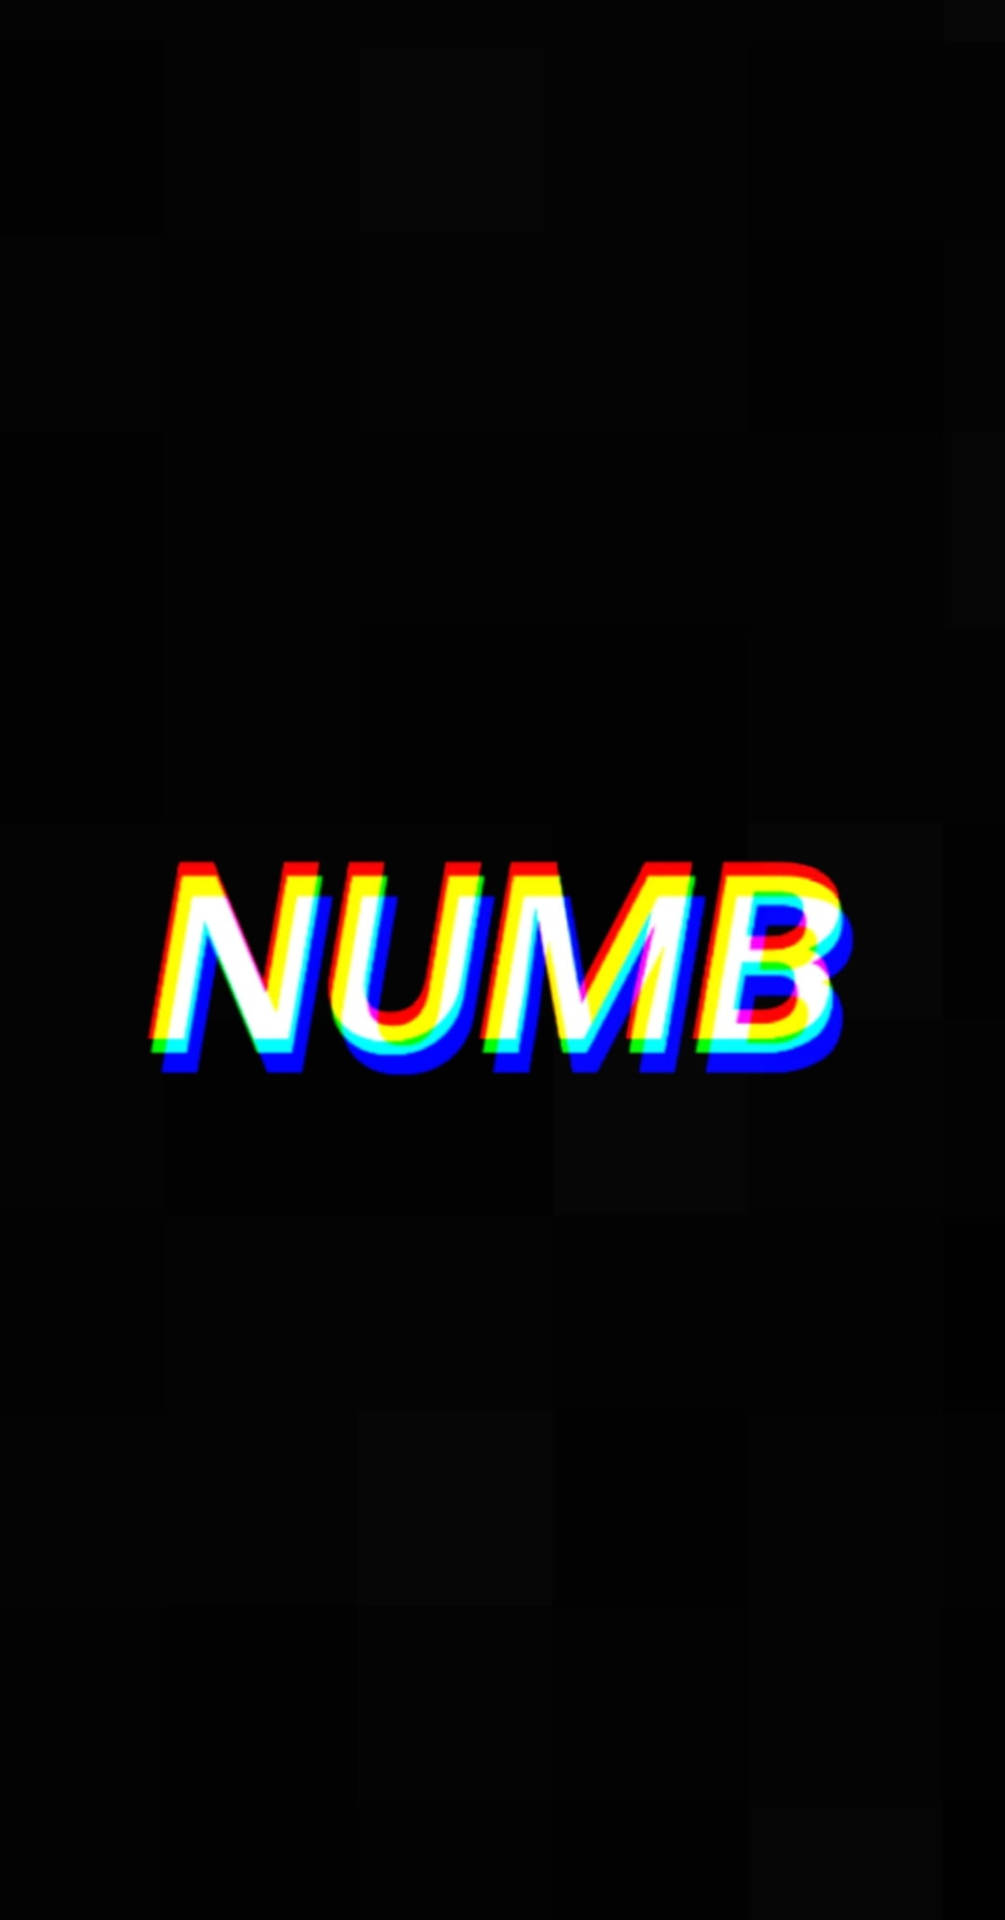 Numb Mood Off